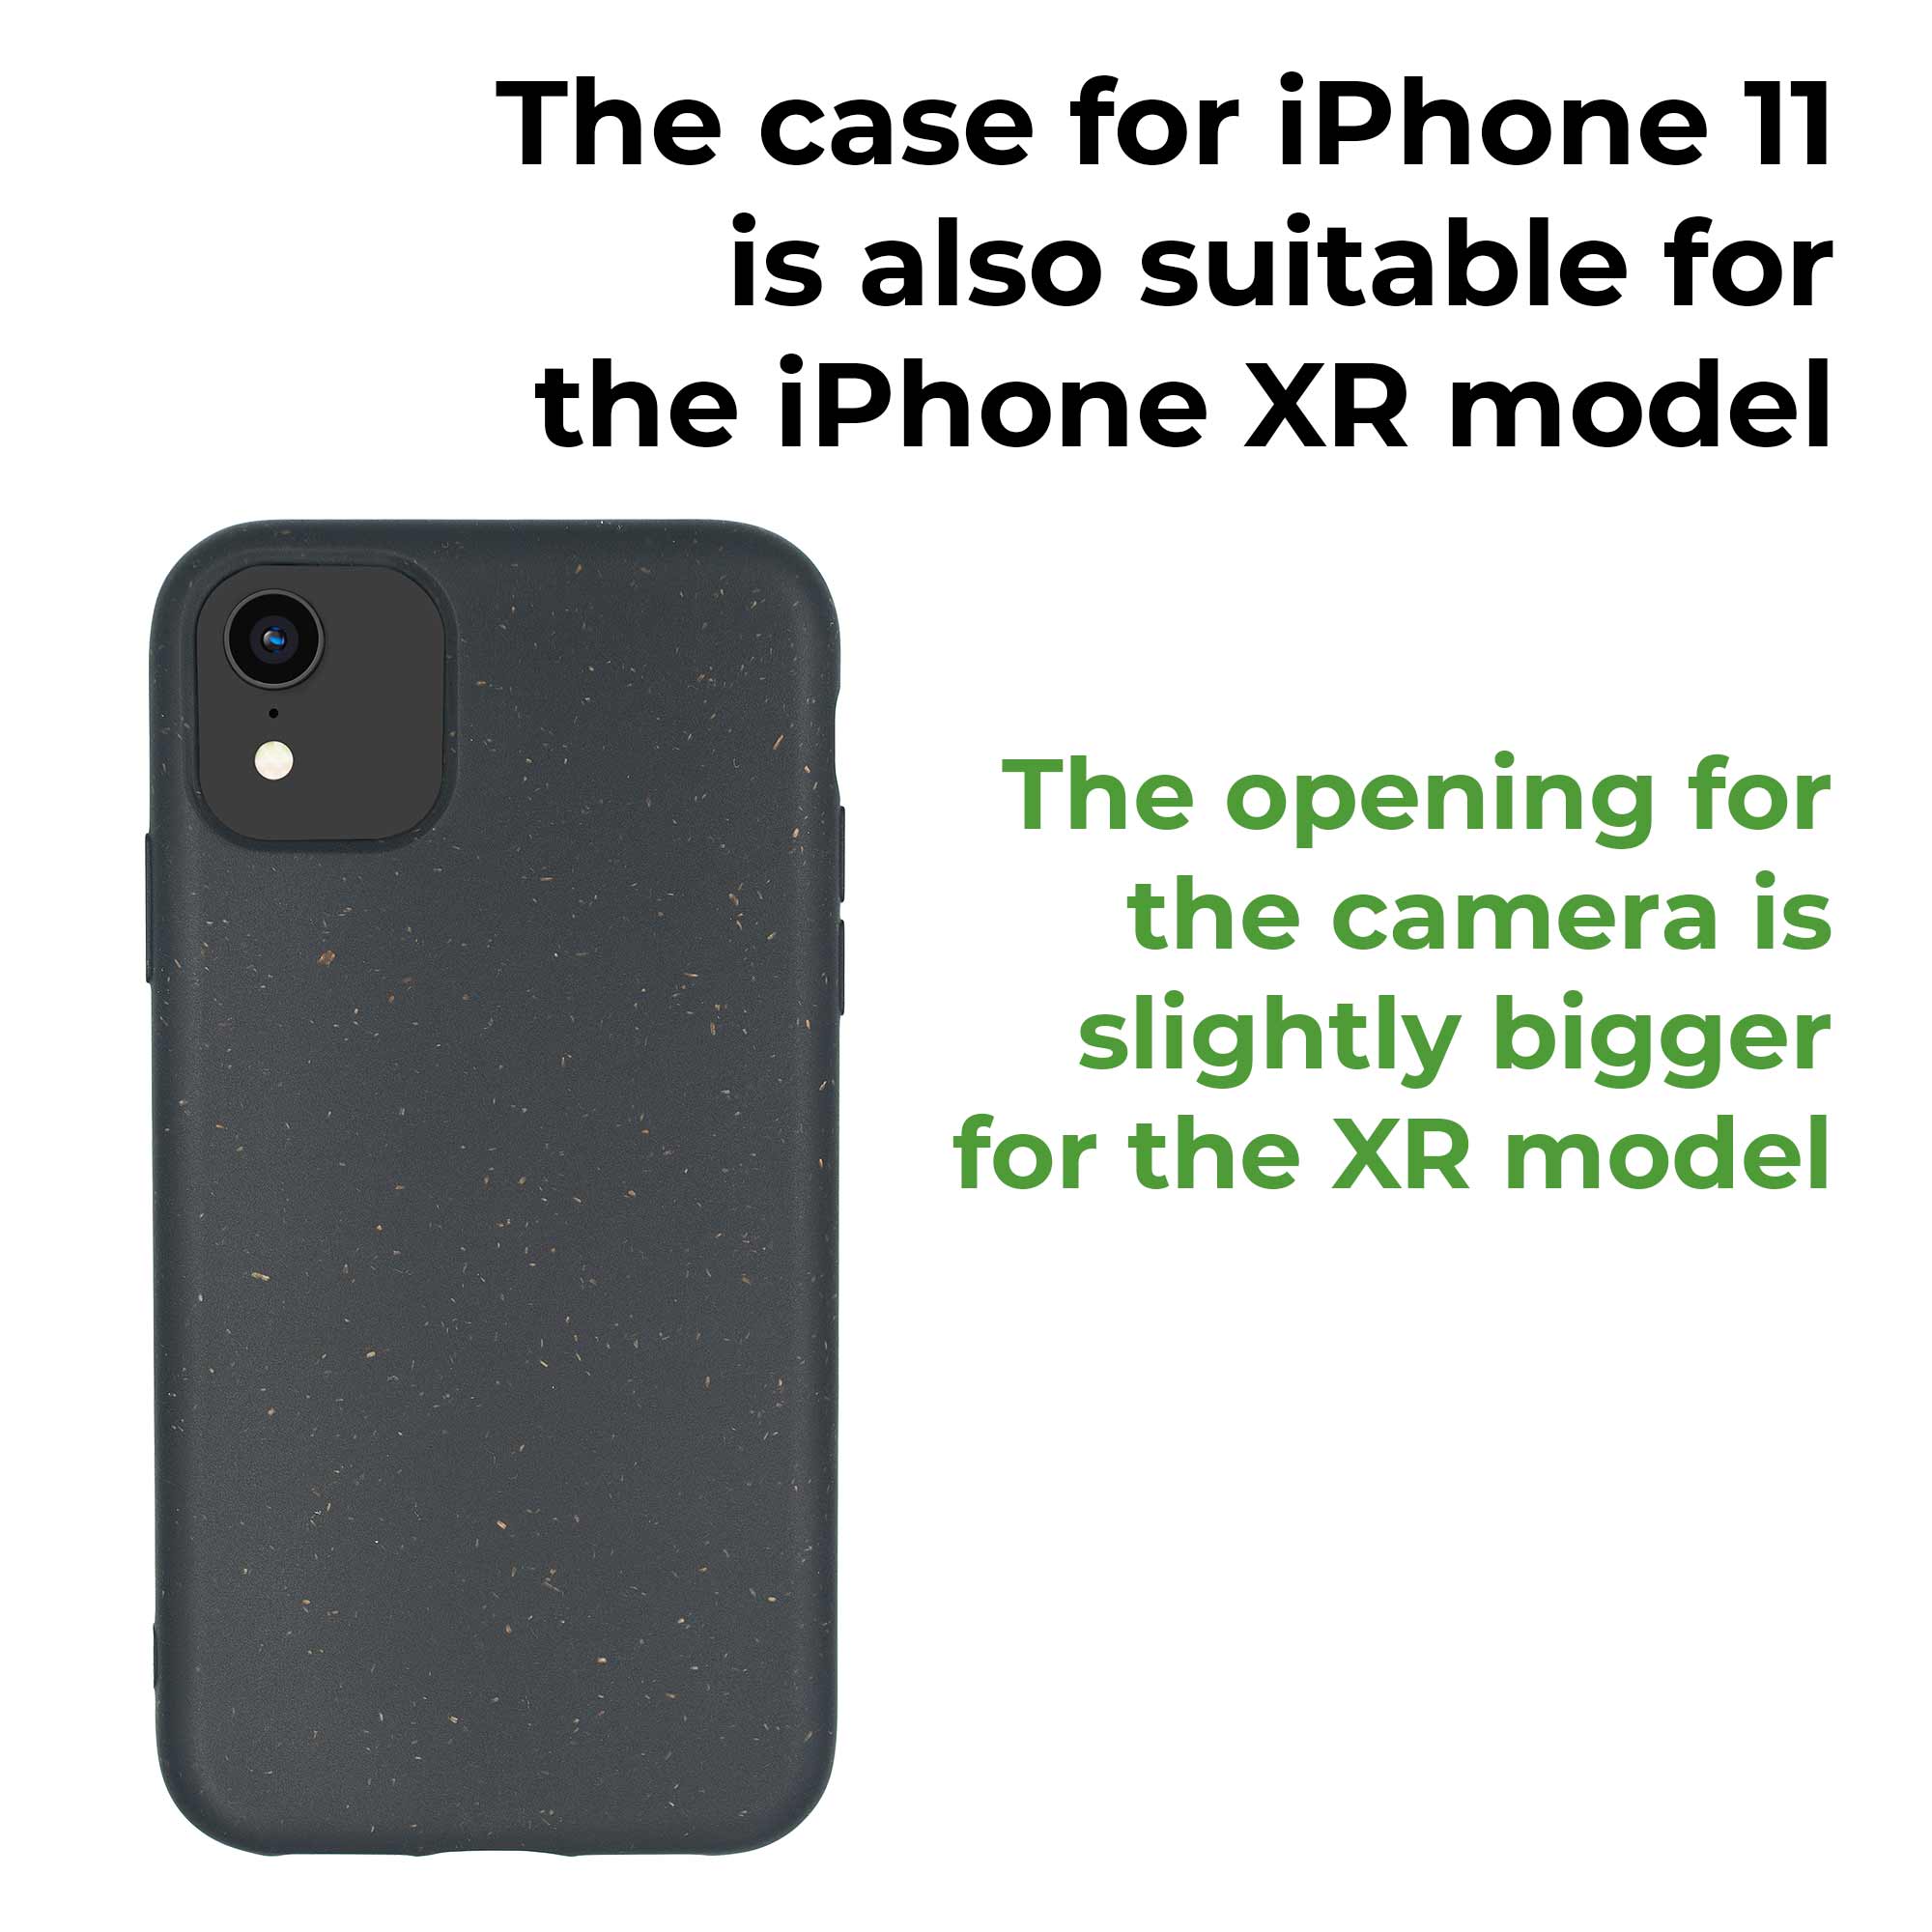 Die iPhone 11 Hülle ist für das iPhone XR geeignet